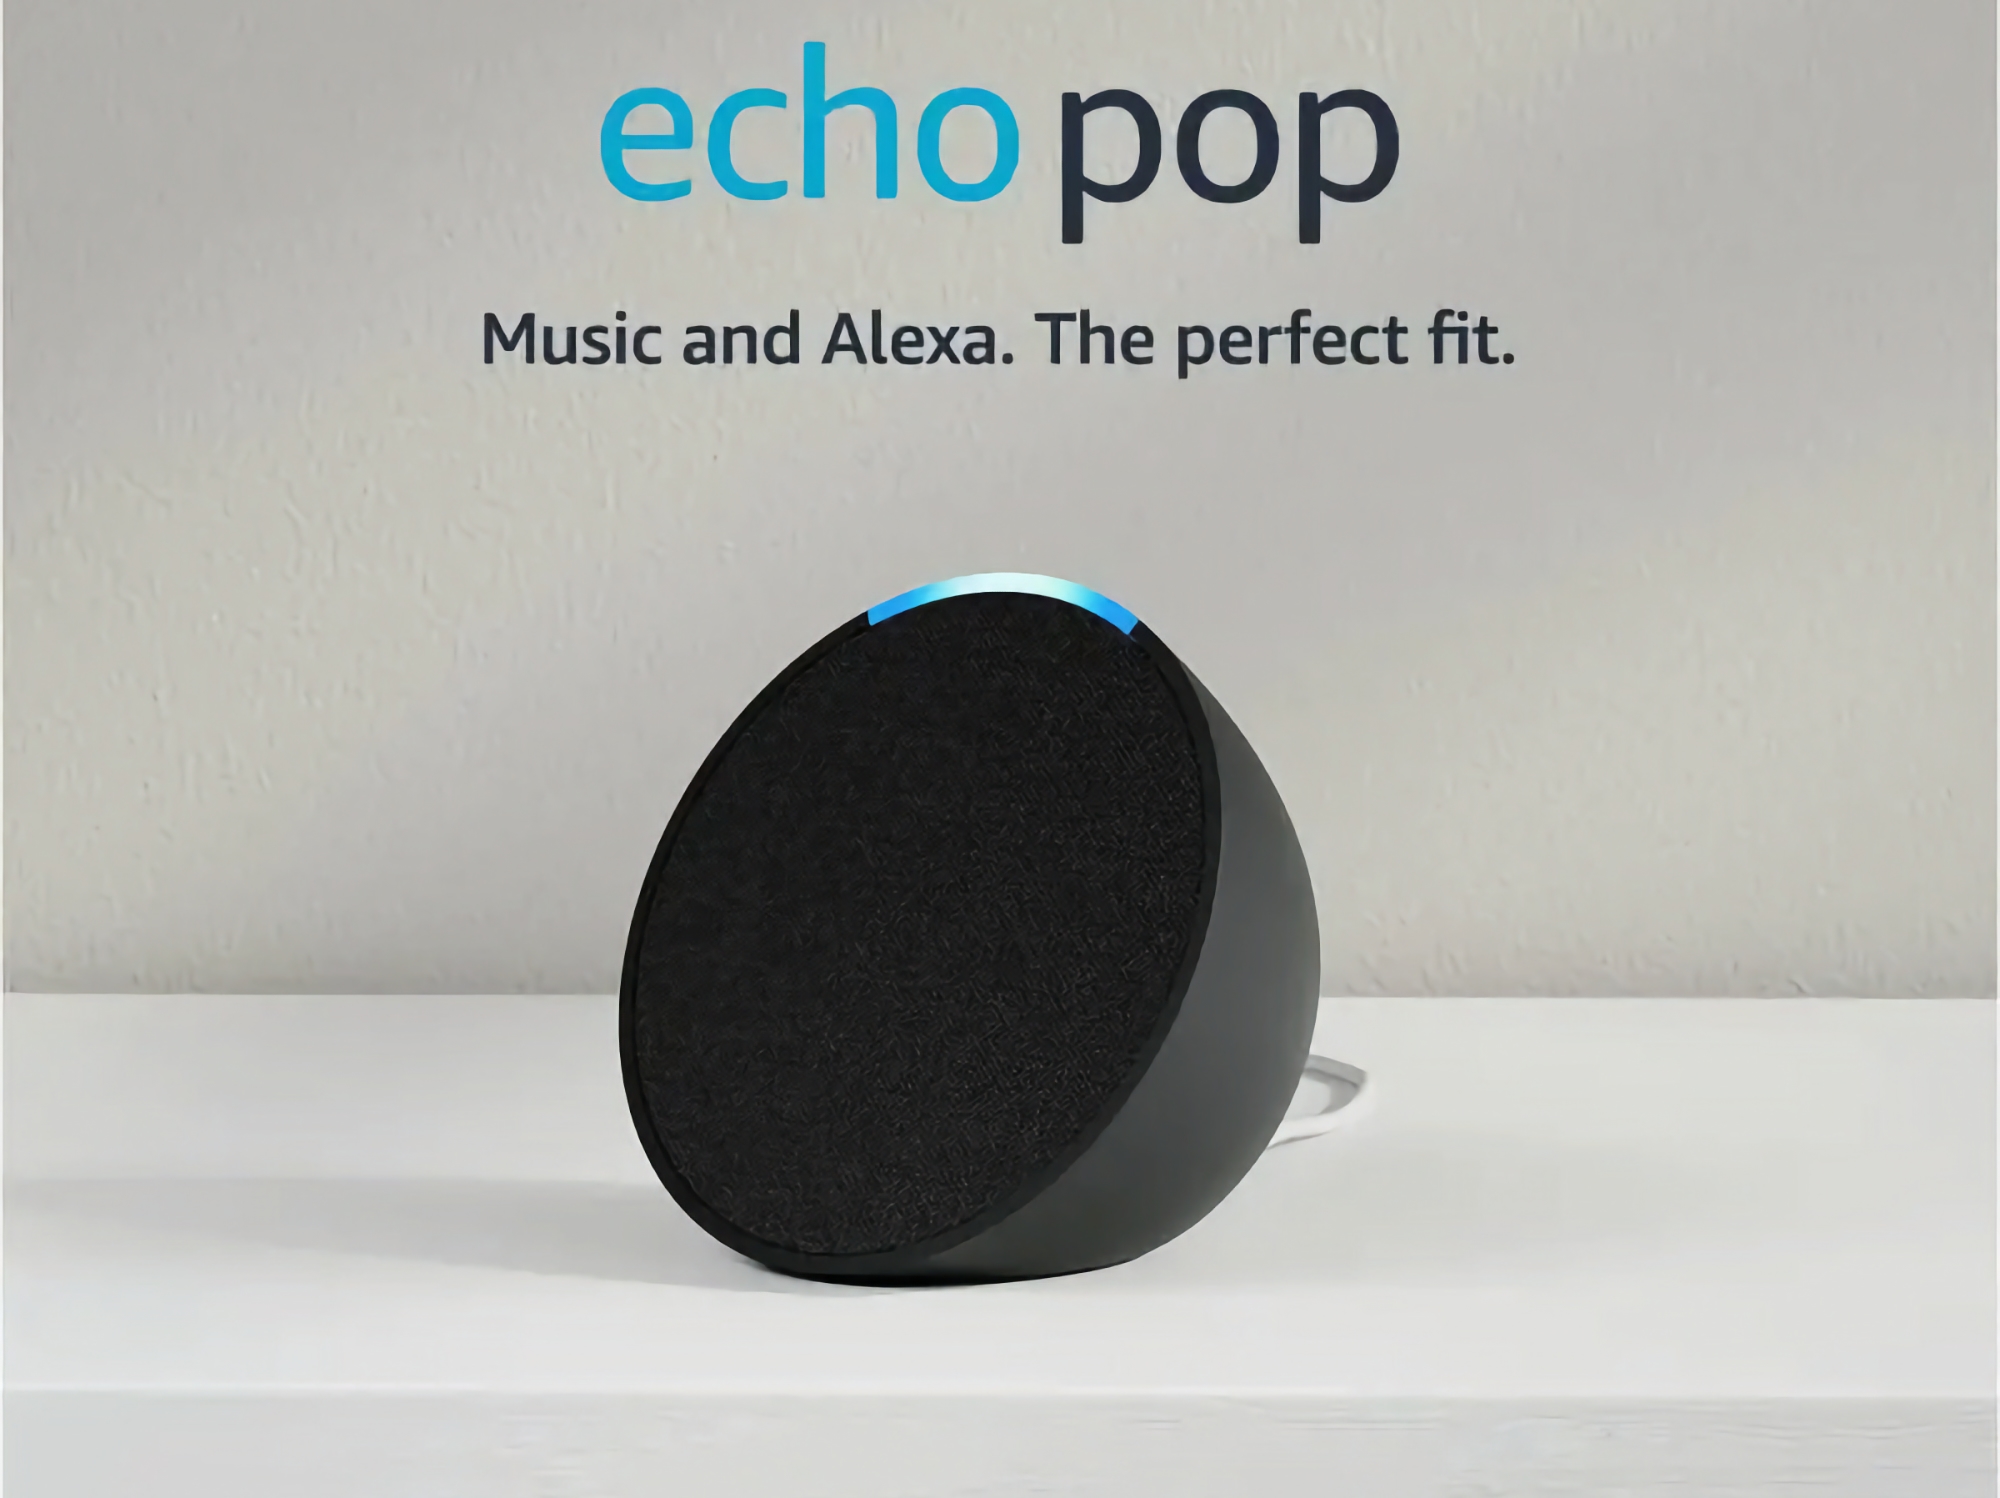 Sconto del 43%: Amazon vende lo smart speaker Echo Pop a un prezzo promozionale